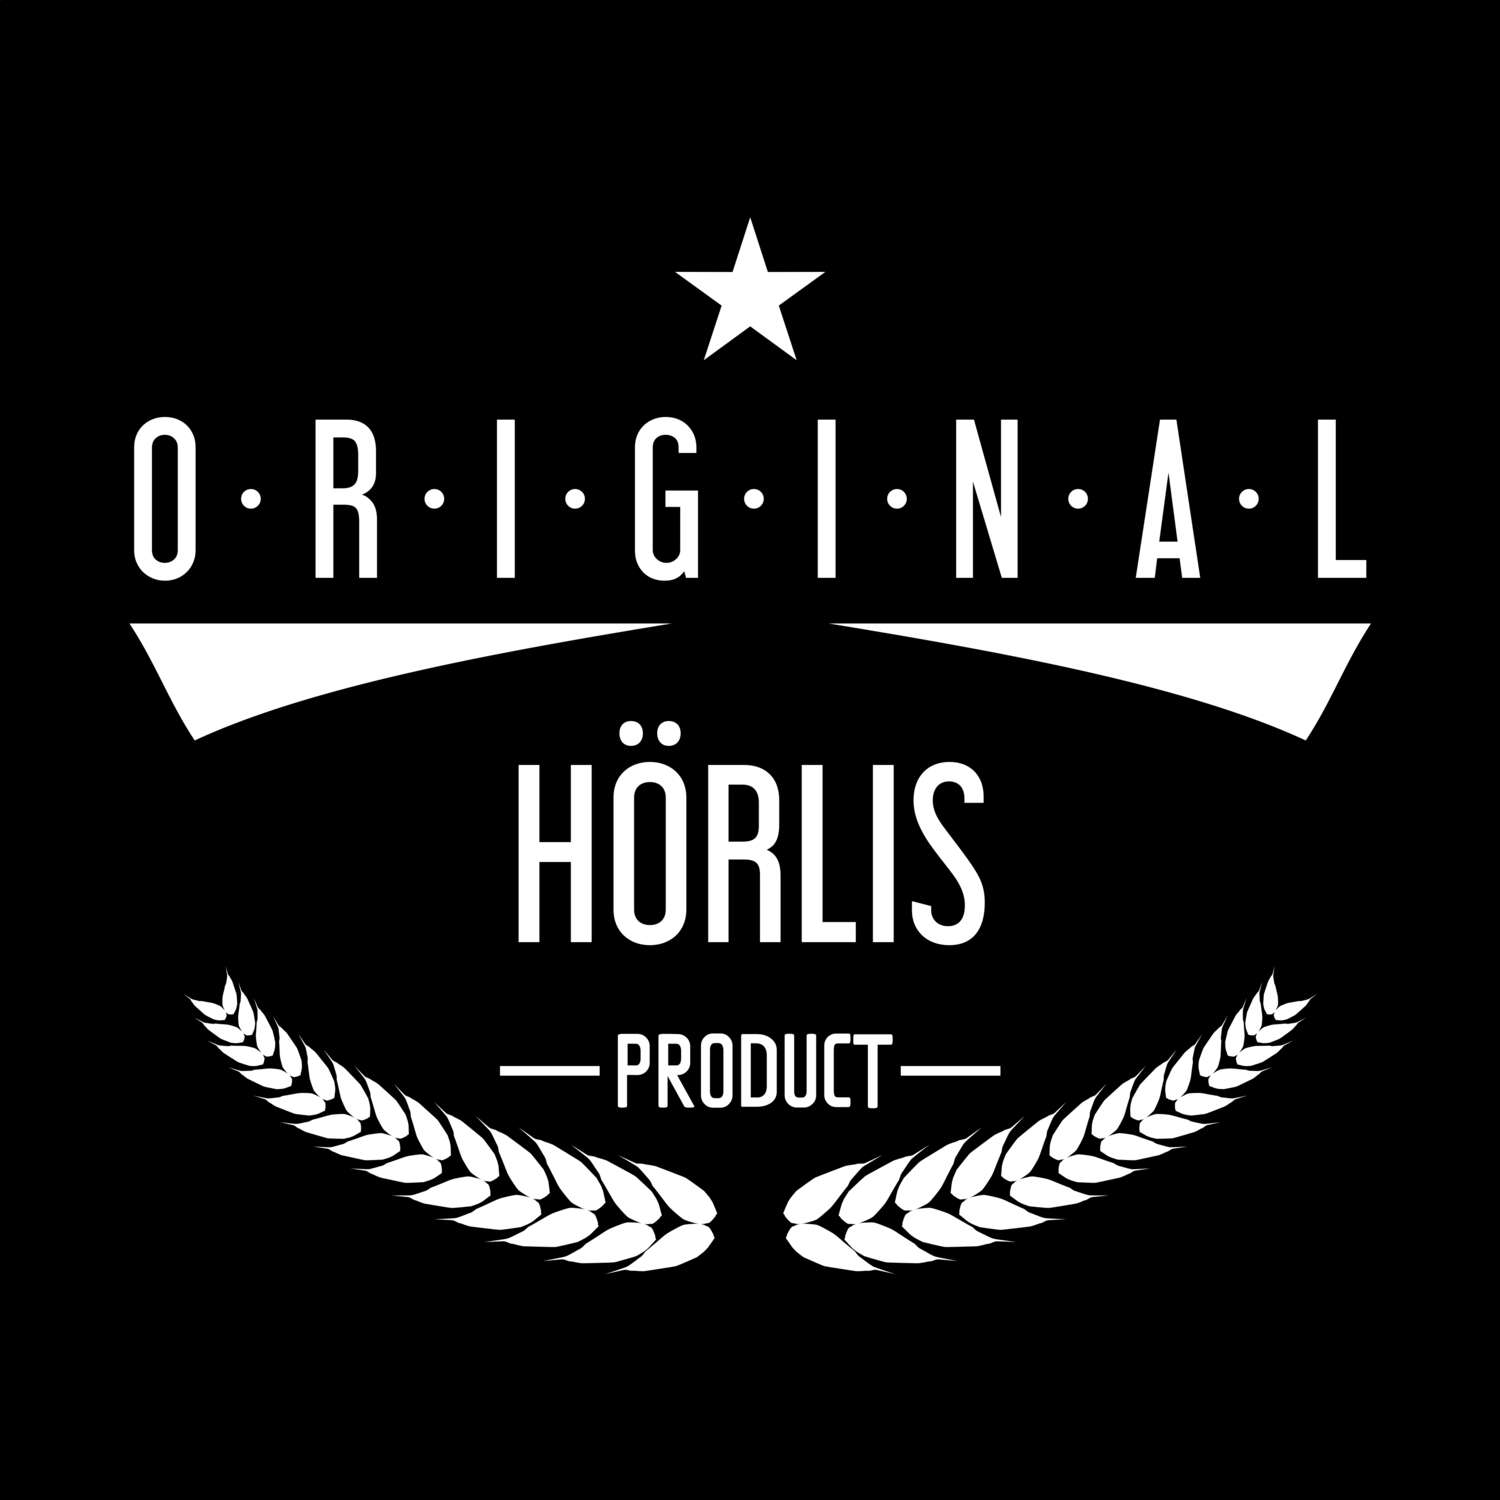 Hörlis T-Shirt »Original Product«